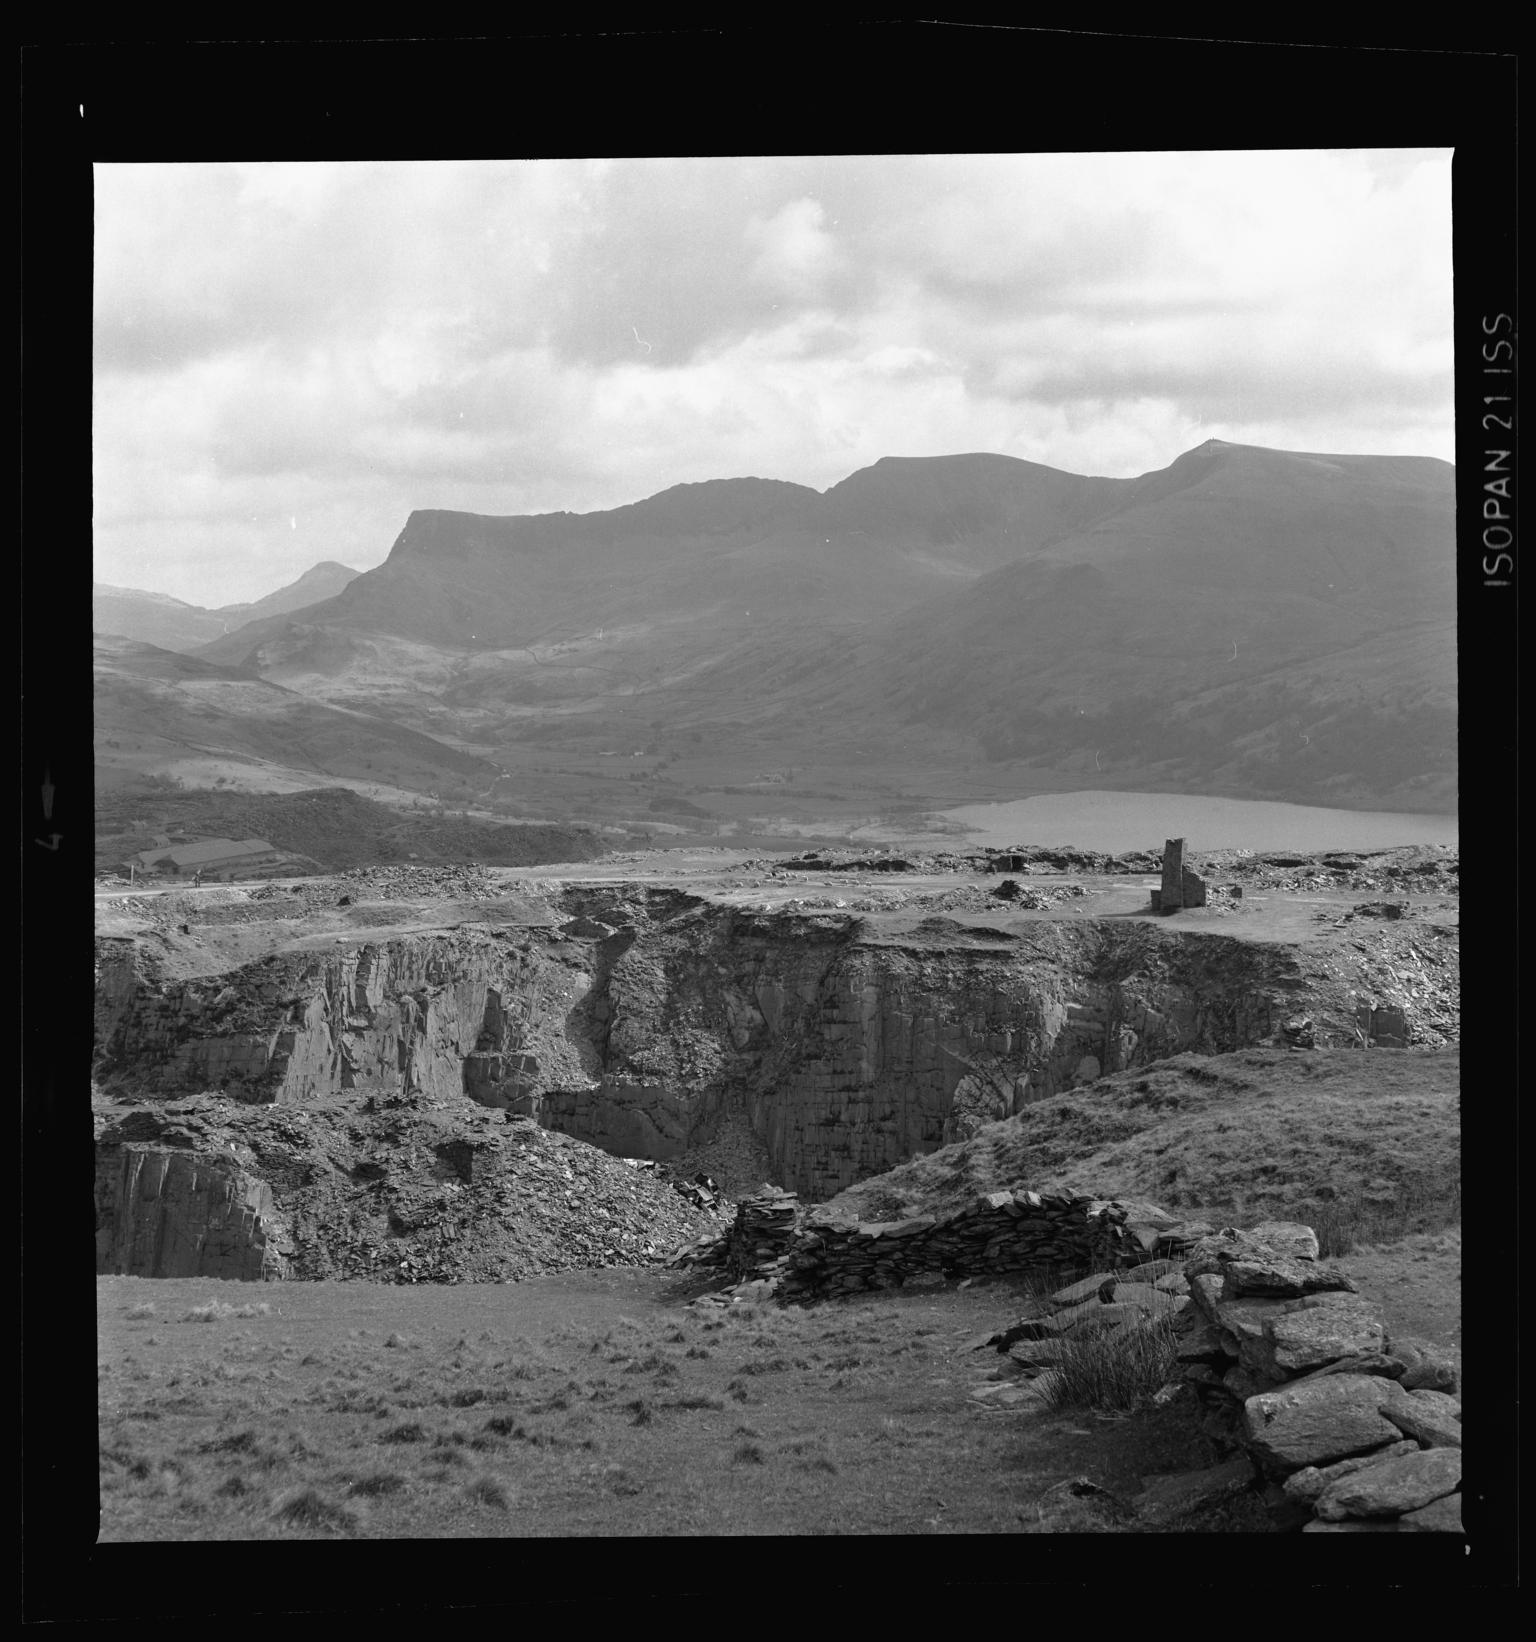 Cilgwyn Quarry, film negative